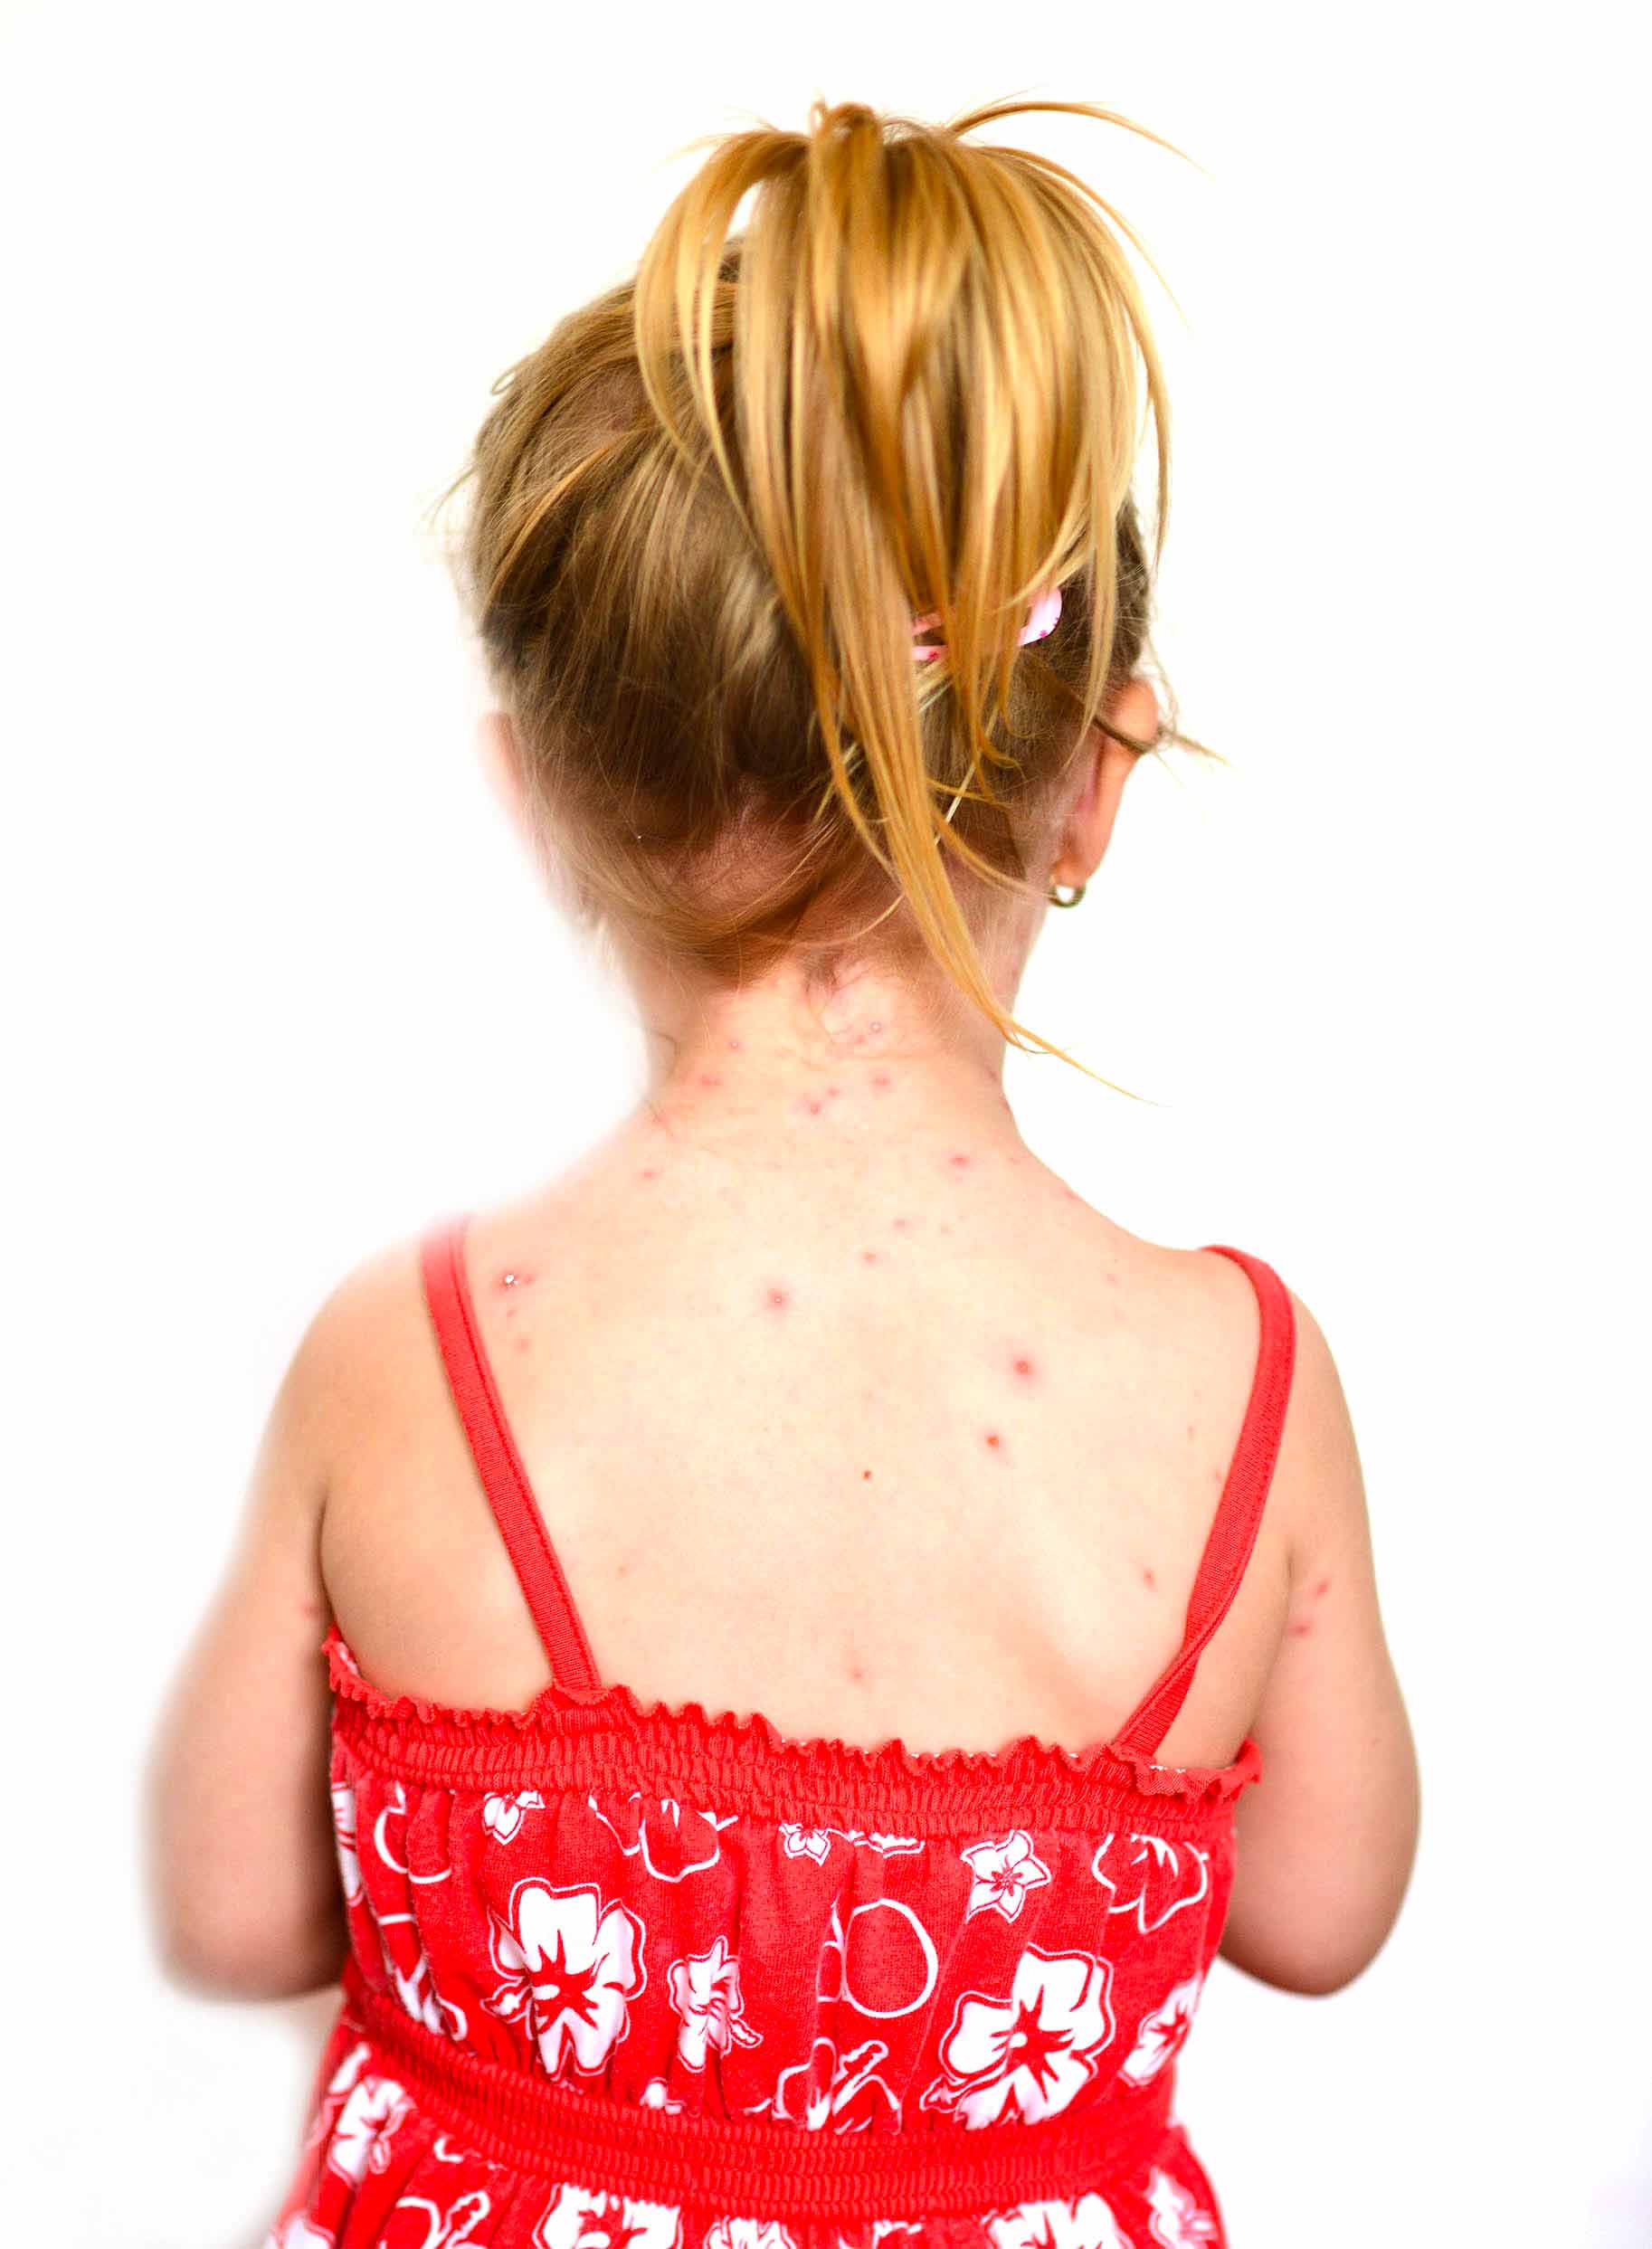 schiena di bambina affetta da varicella